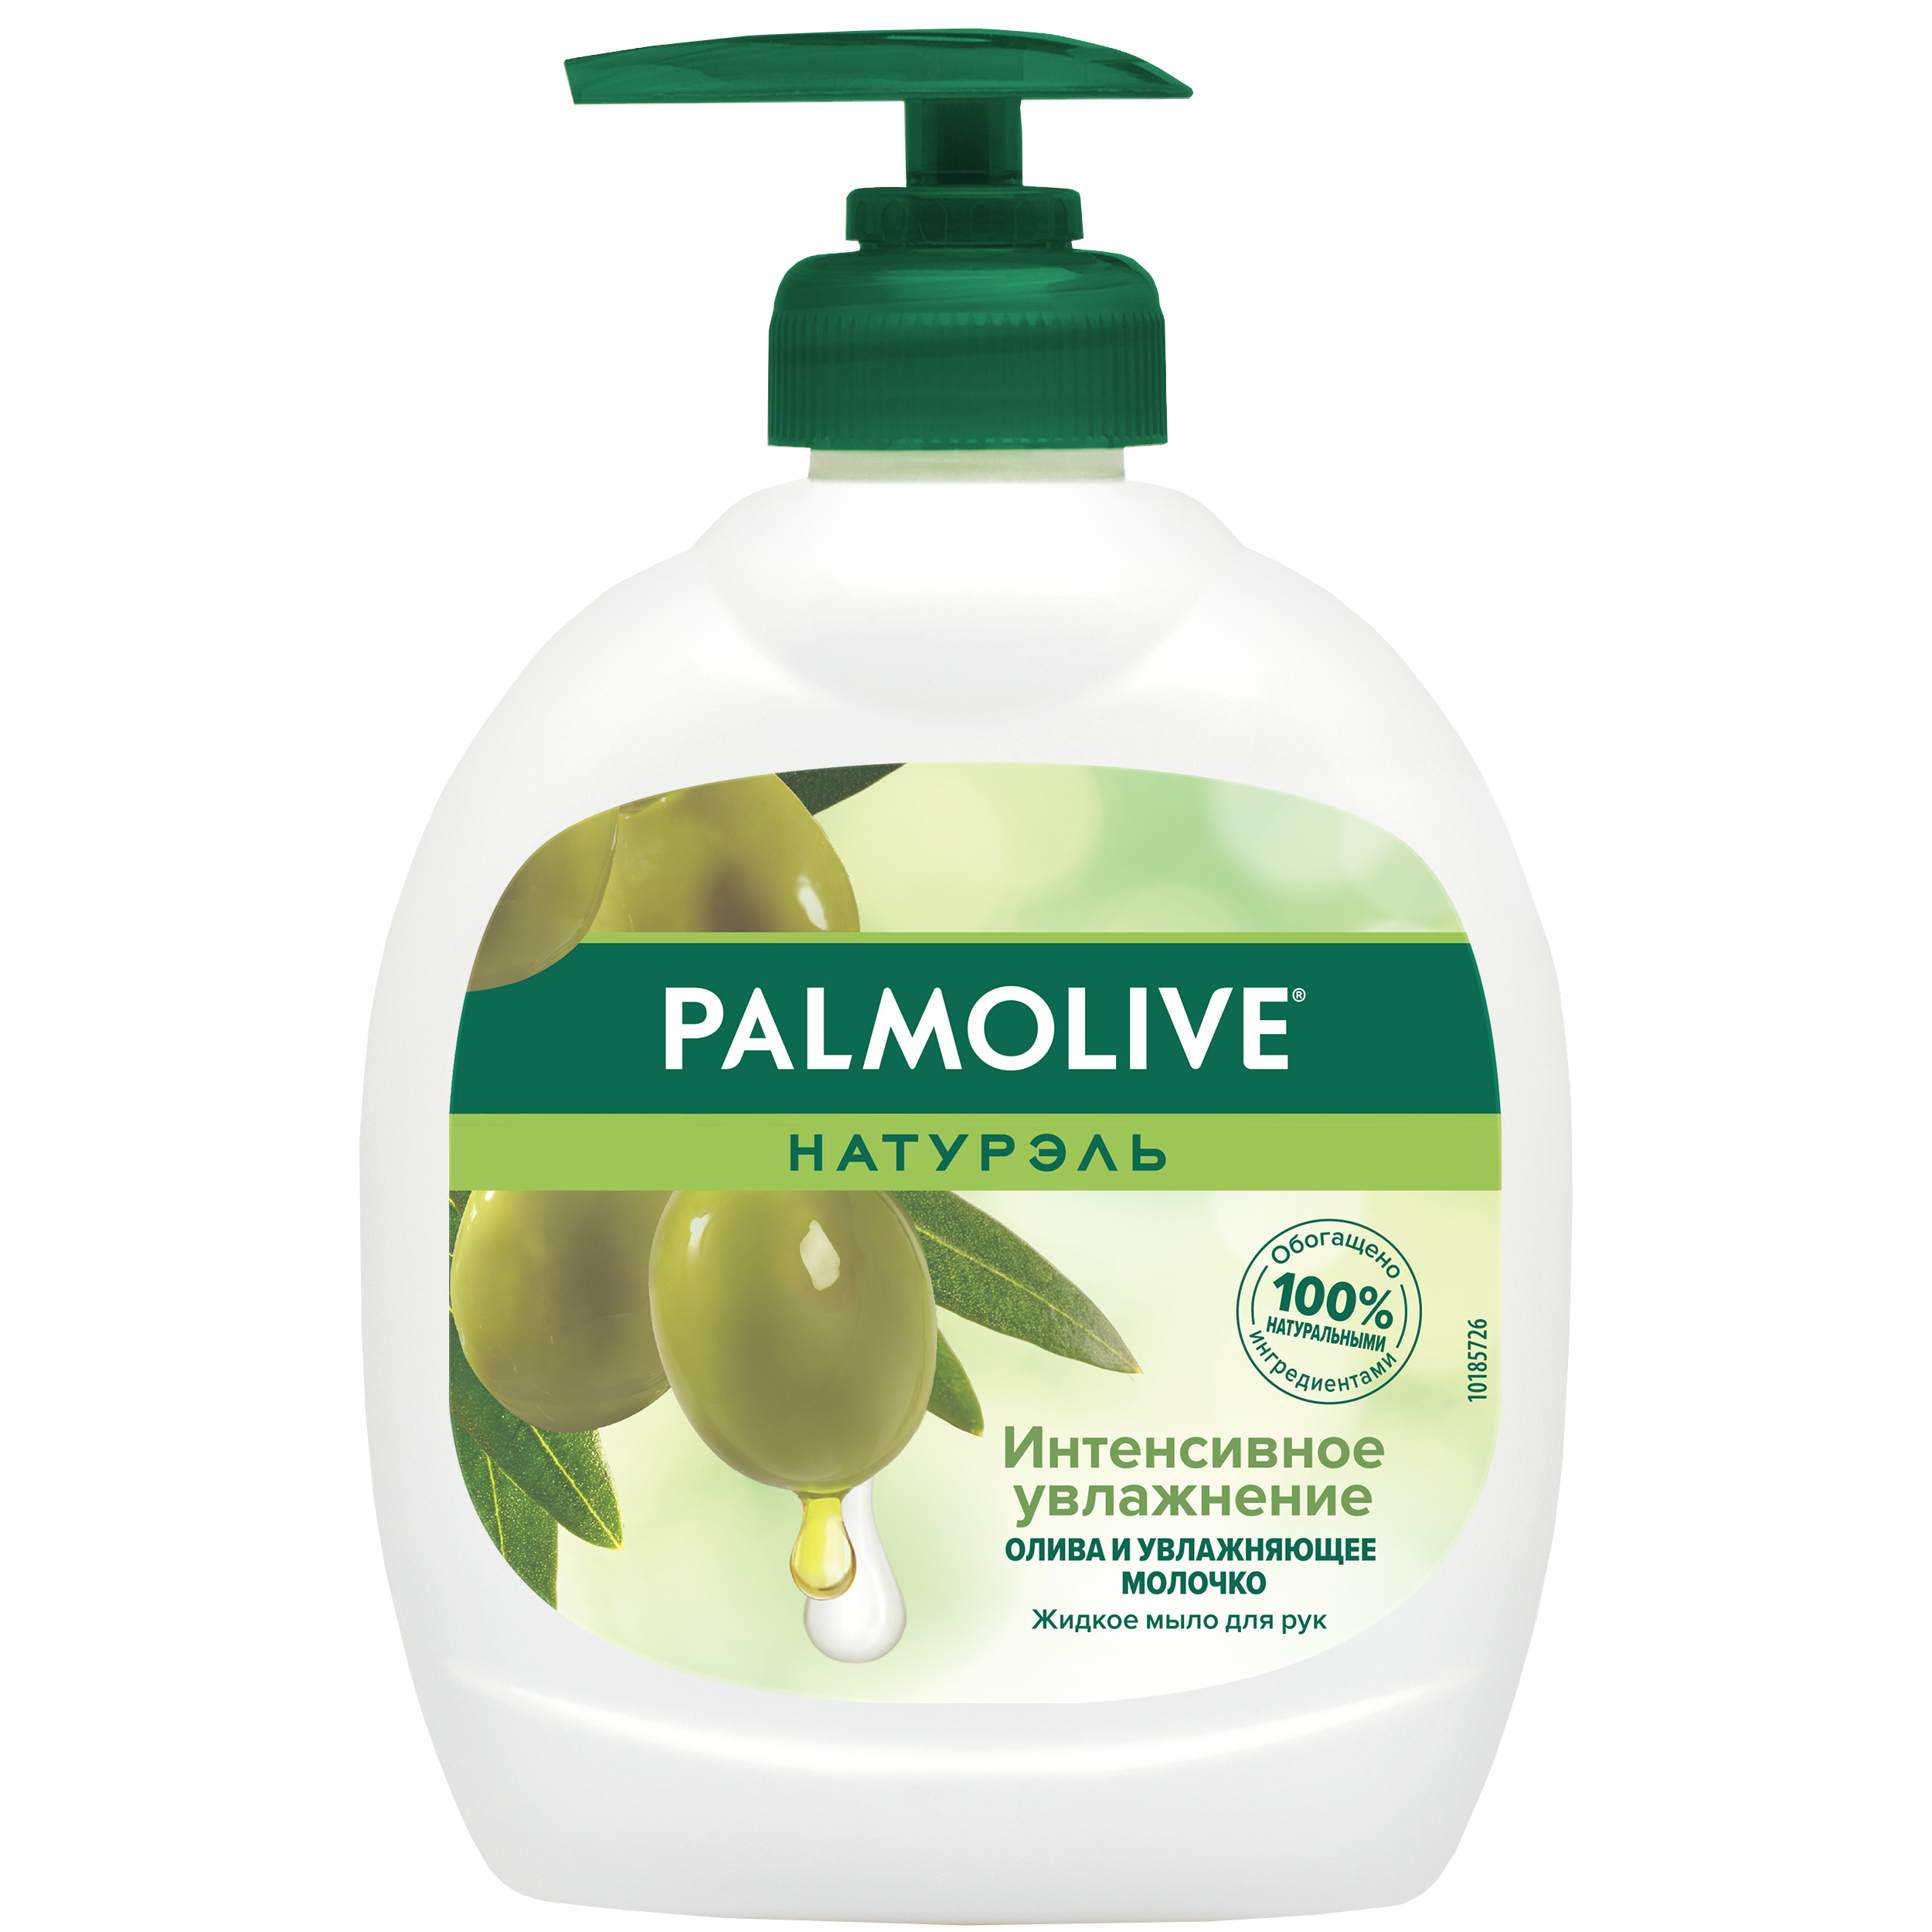 Мыло жидкое для рук Palmolive Интенсивное Увлажнение с увлажняющим молочком 300 мл косметическое мыло palmolive с экстрактом оливы и увлажняющим молочком 90г